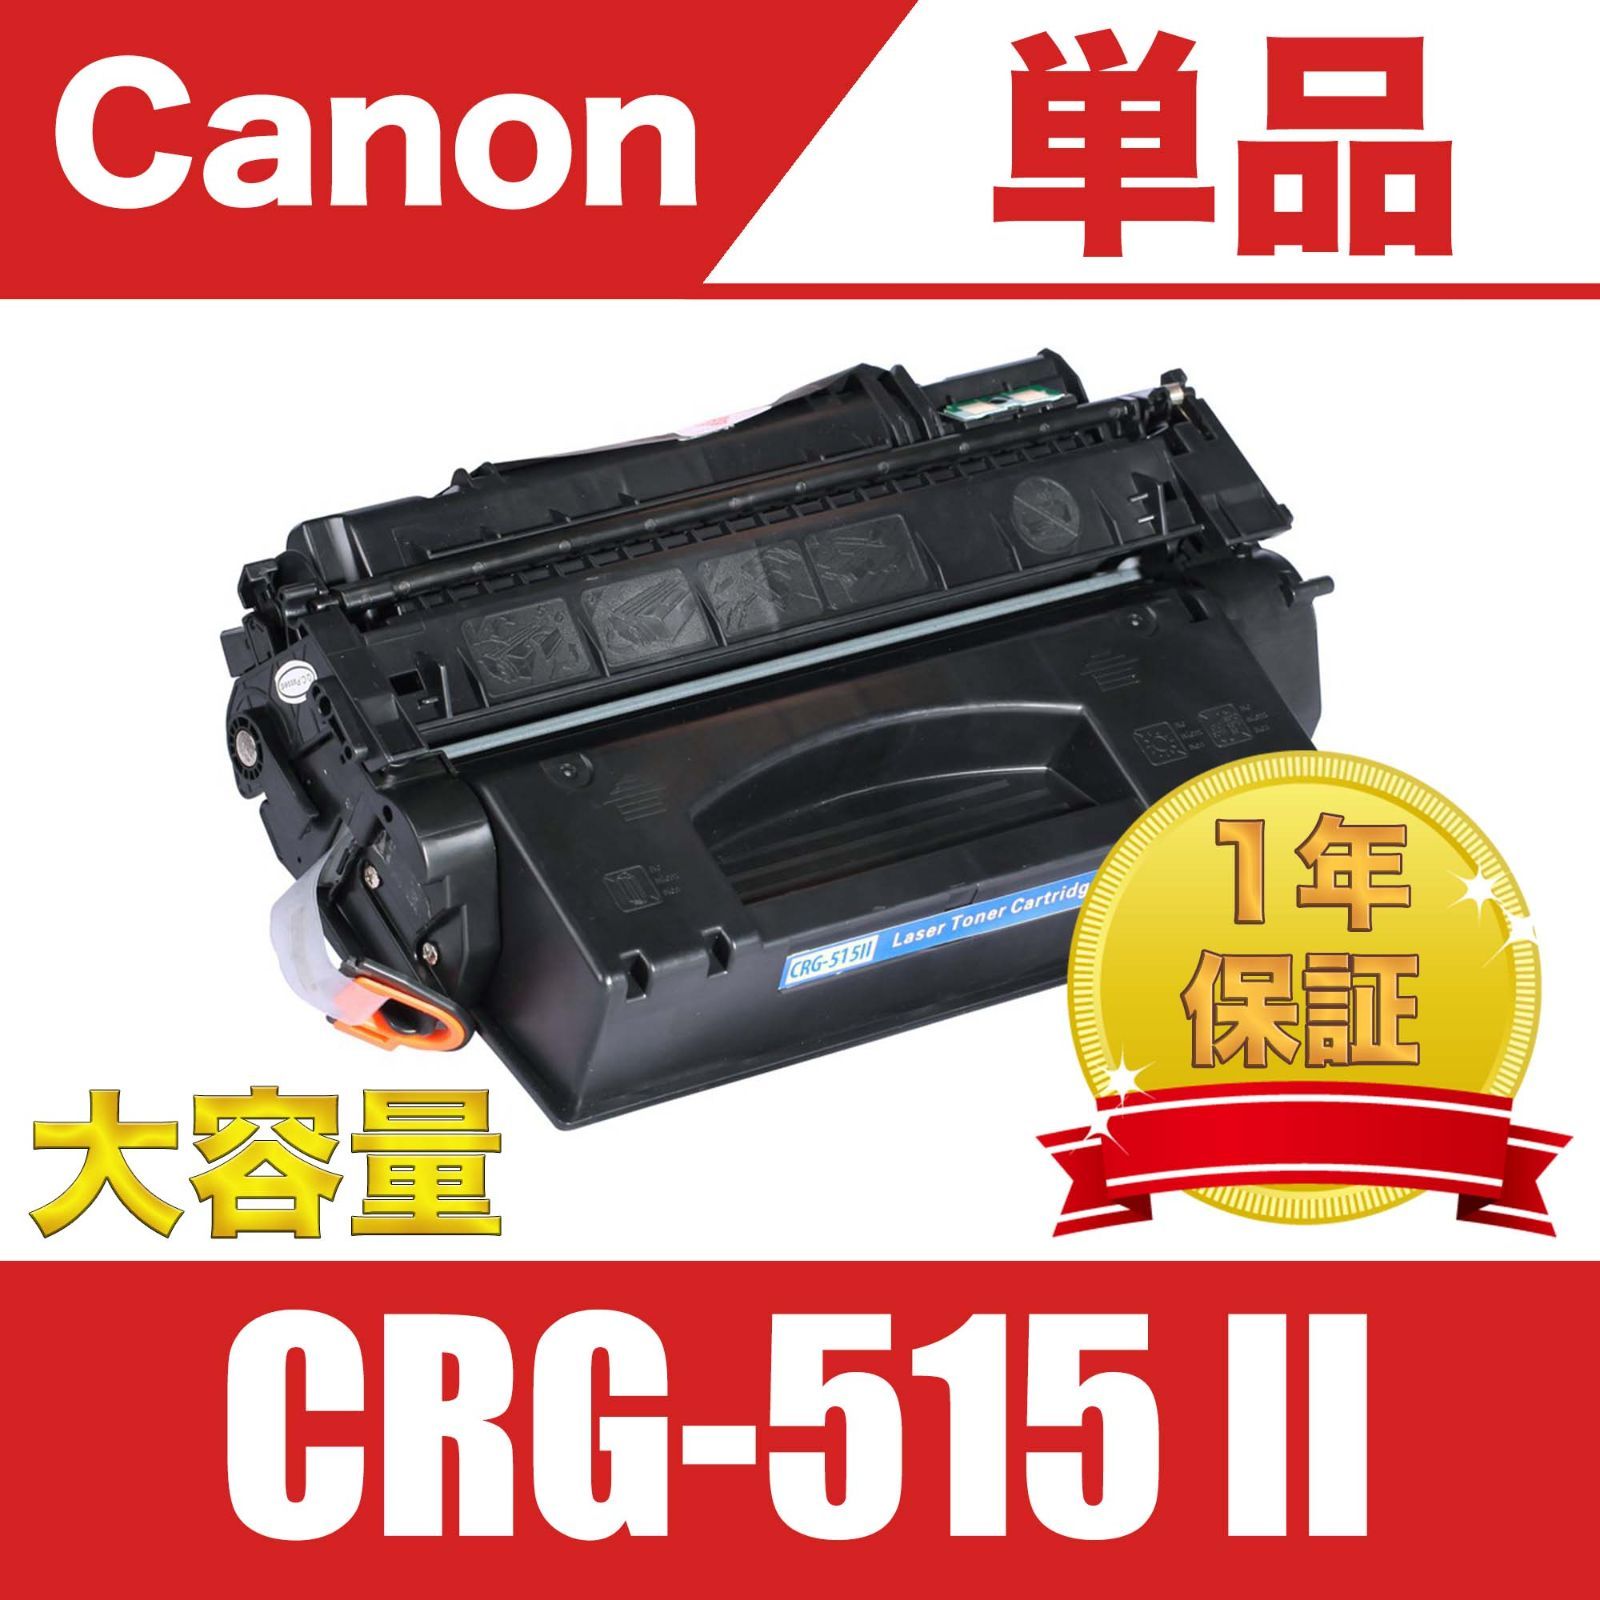 良質 Canon 純正トナー CRG-515Ⅱ cominox.com.mx